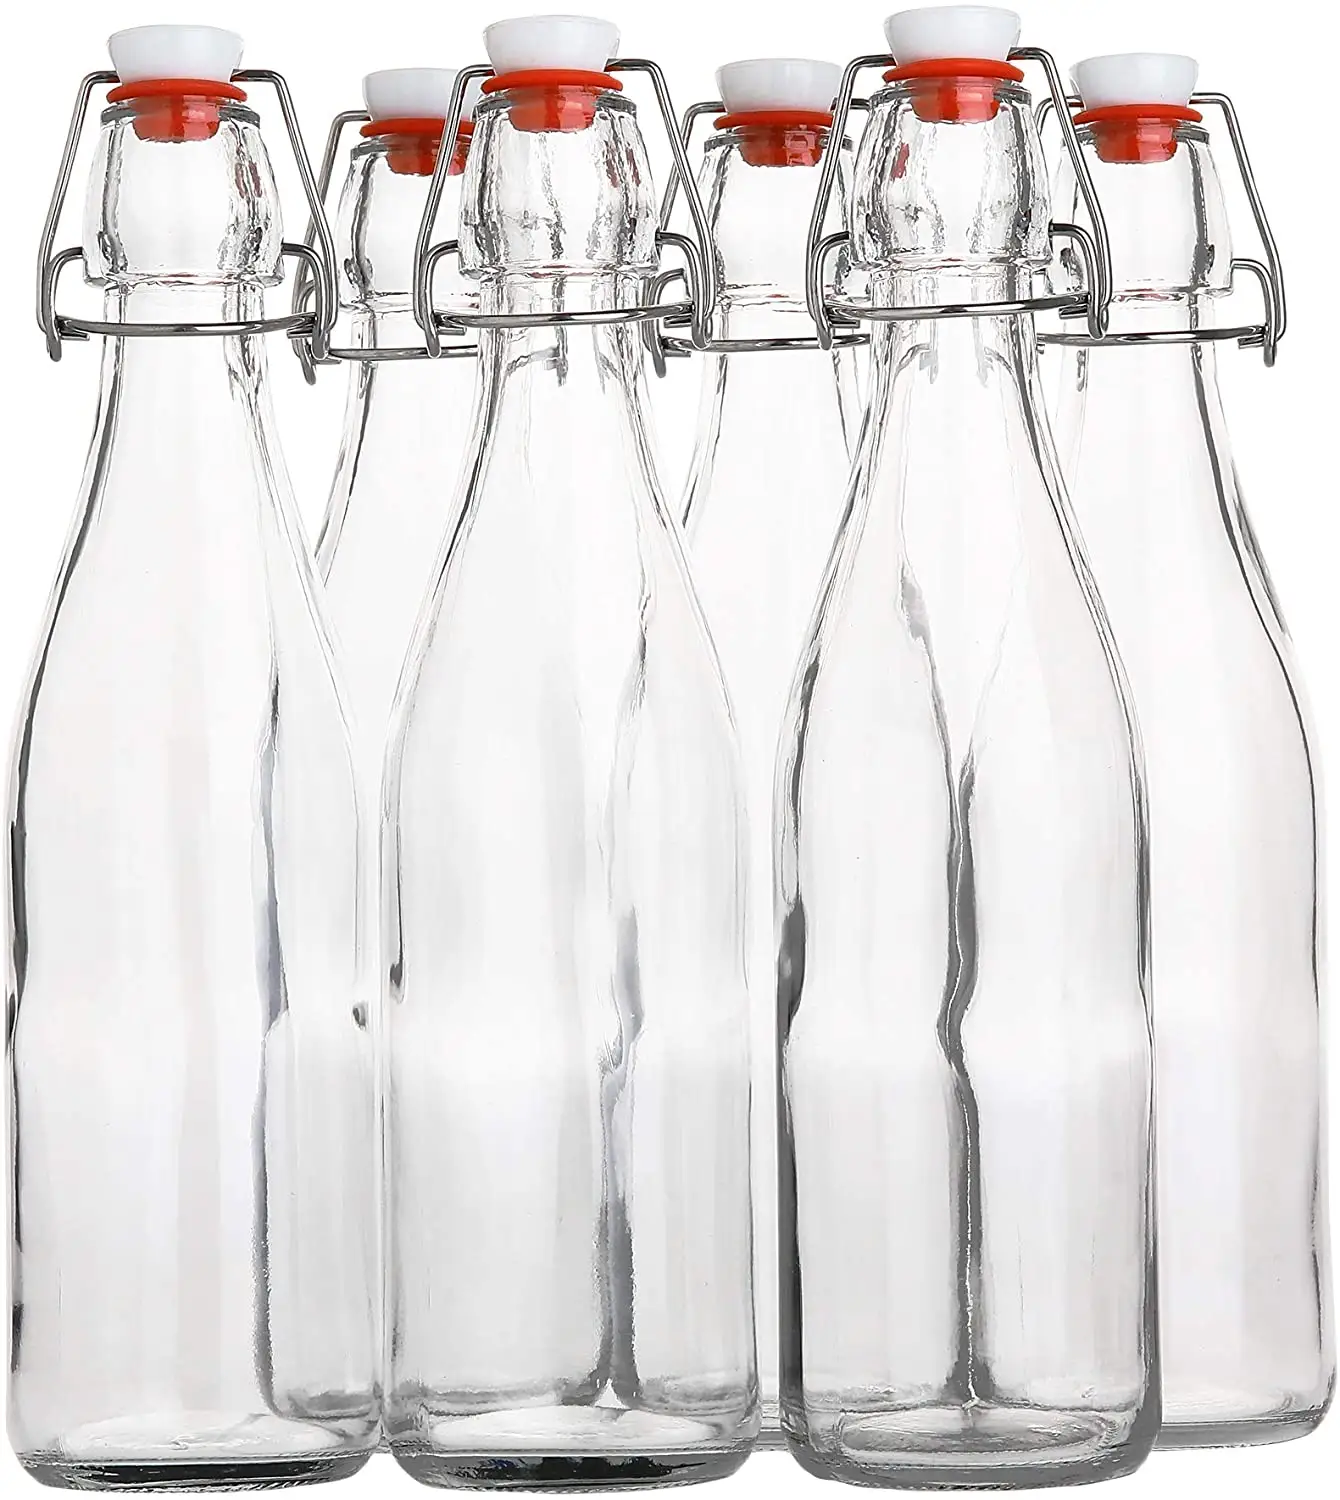 Garrafa de vidro flip top 500 ml/ 16 fl. Garrafa de fabricação com rolha reutilizável oz, garrafa reutilizável para bebidas